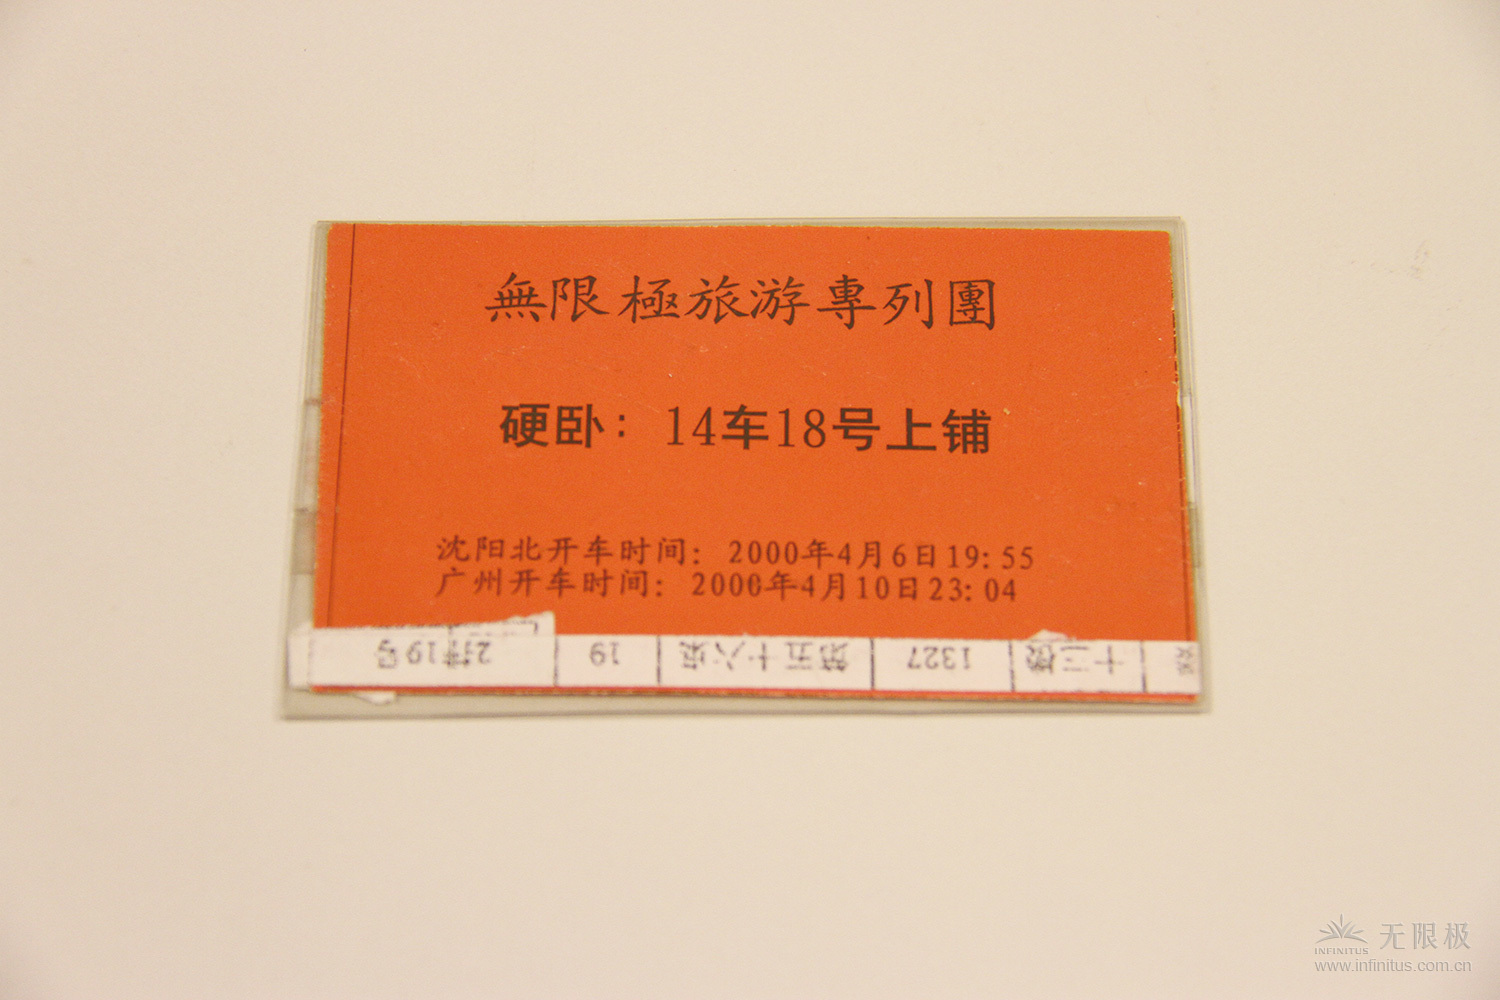 伙伴手里还保存这次销售年会真人斗牛【中国】有限公司,旅游专列团的车票。